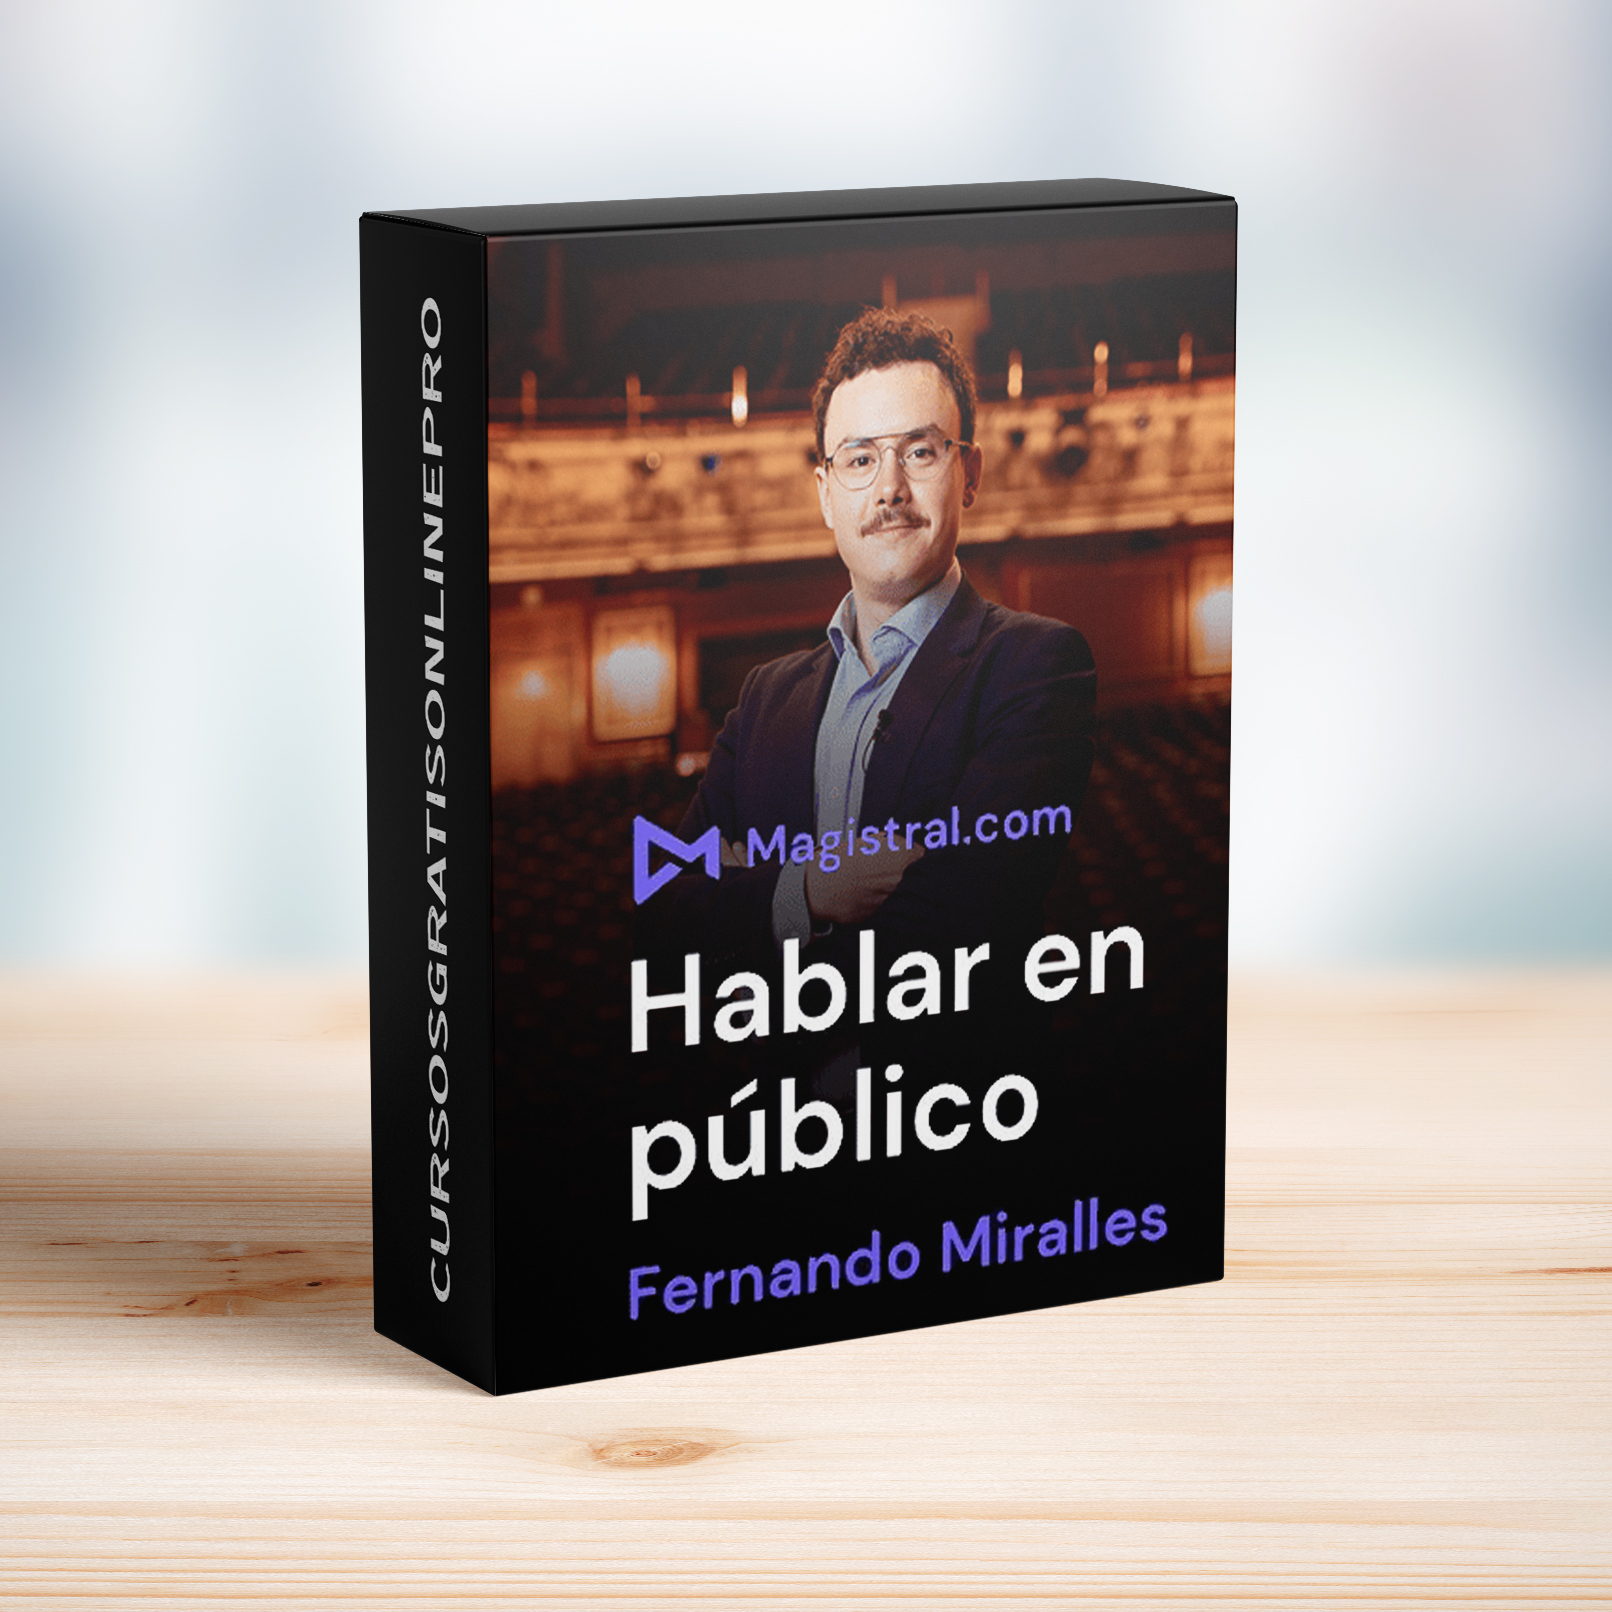 Curso Hablar en público – Fernando Miralles - Cursos Gratis Online Pro